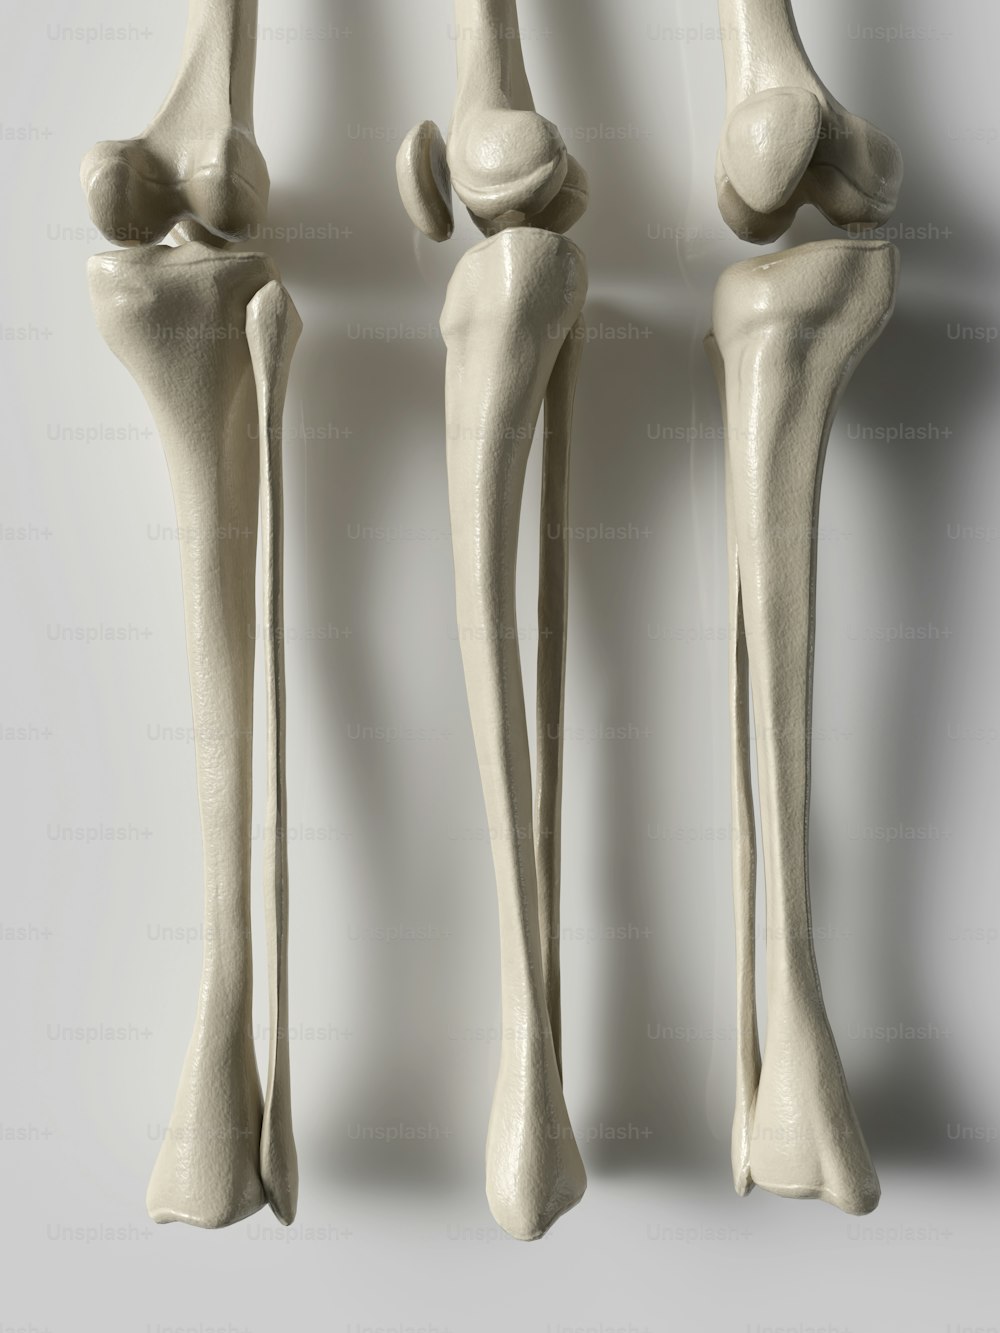 인간의 뼈에 대한 세 가지 다른 견해